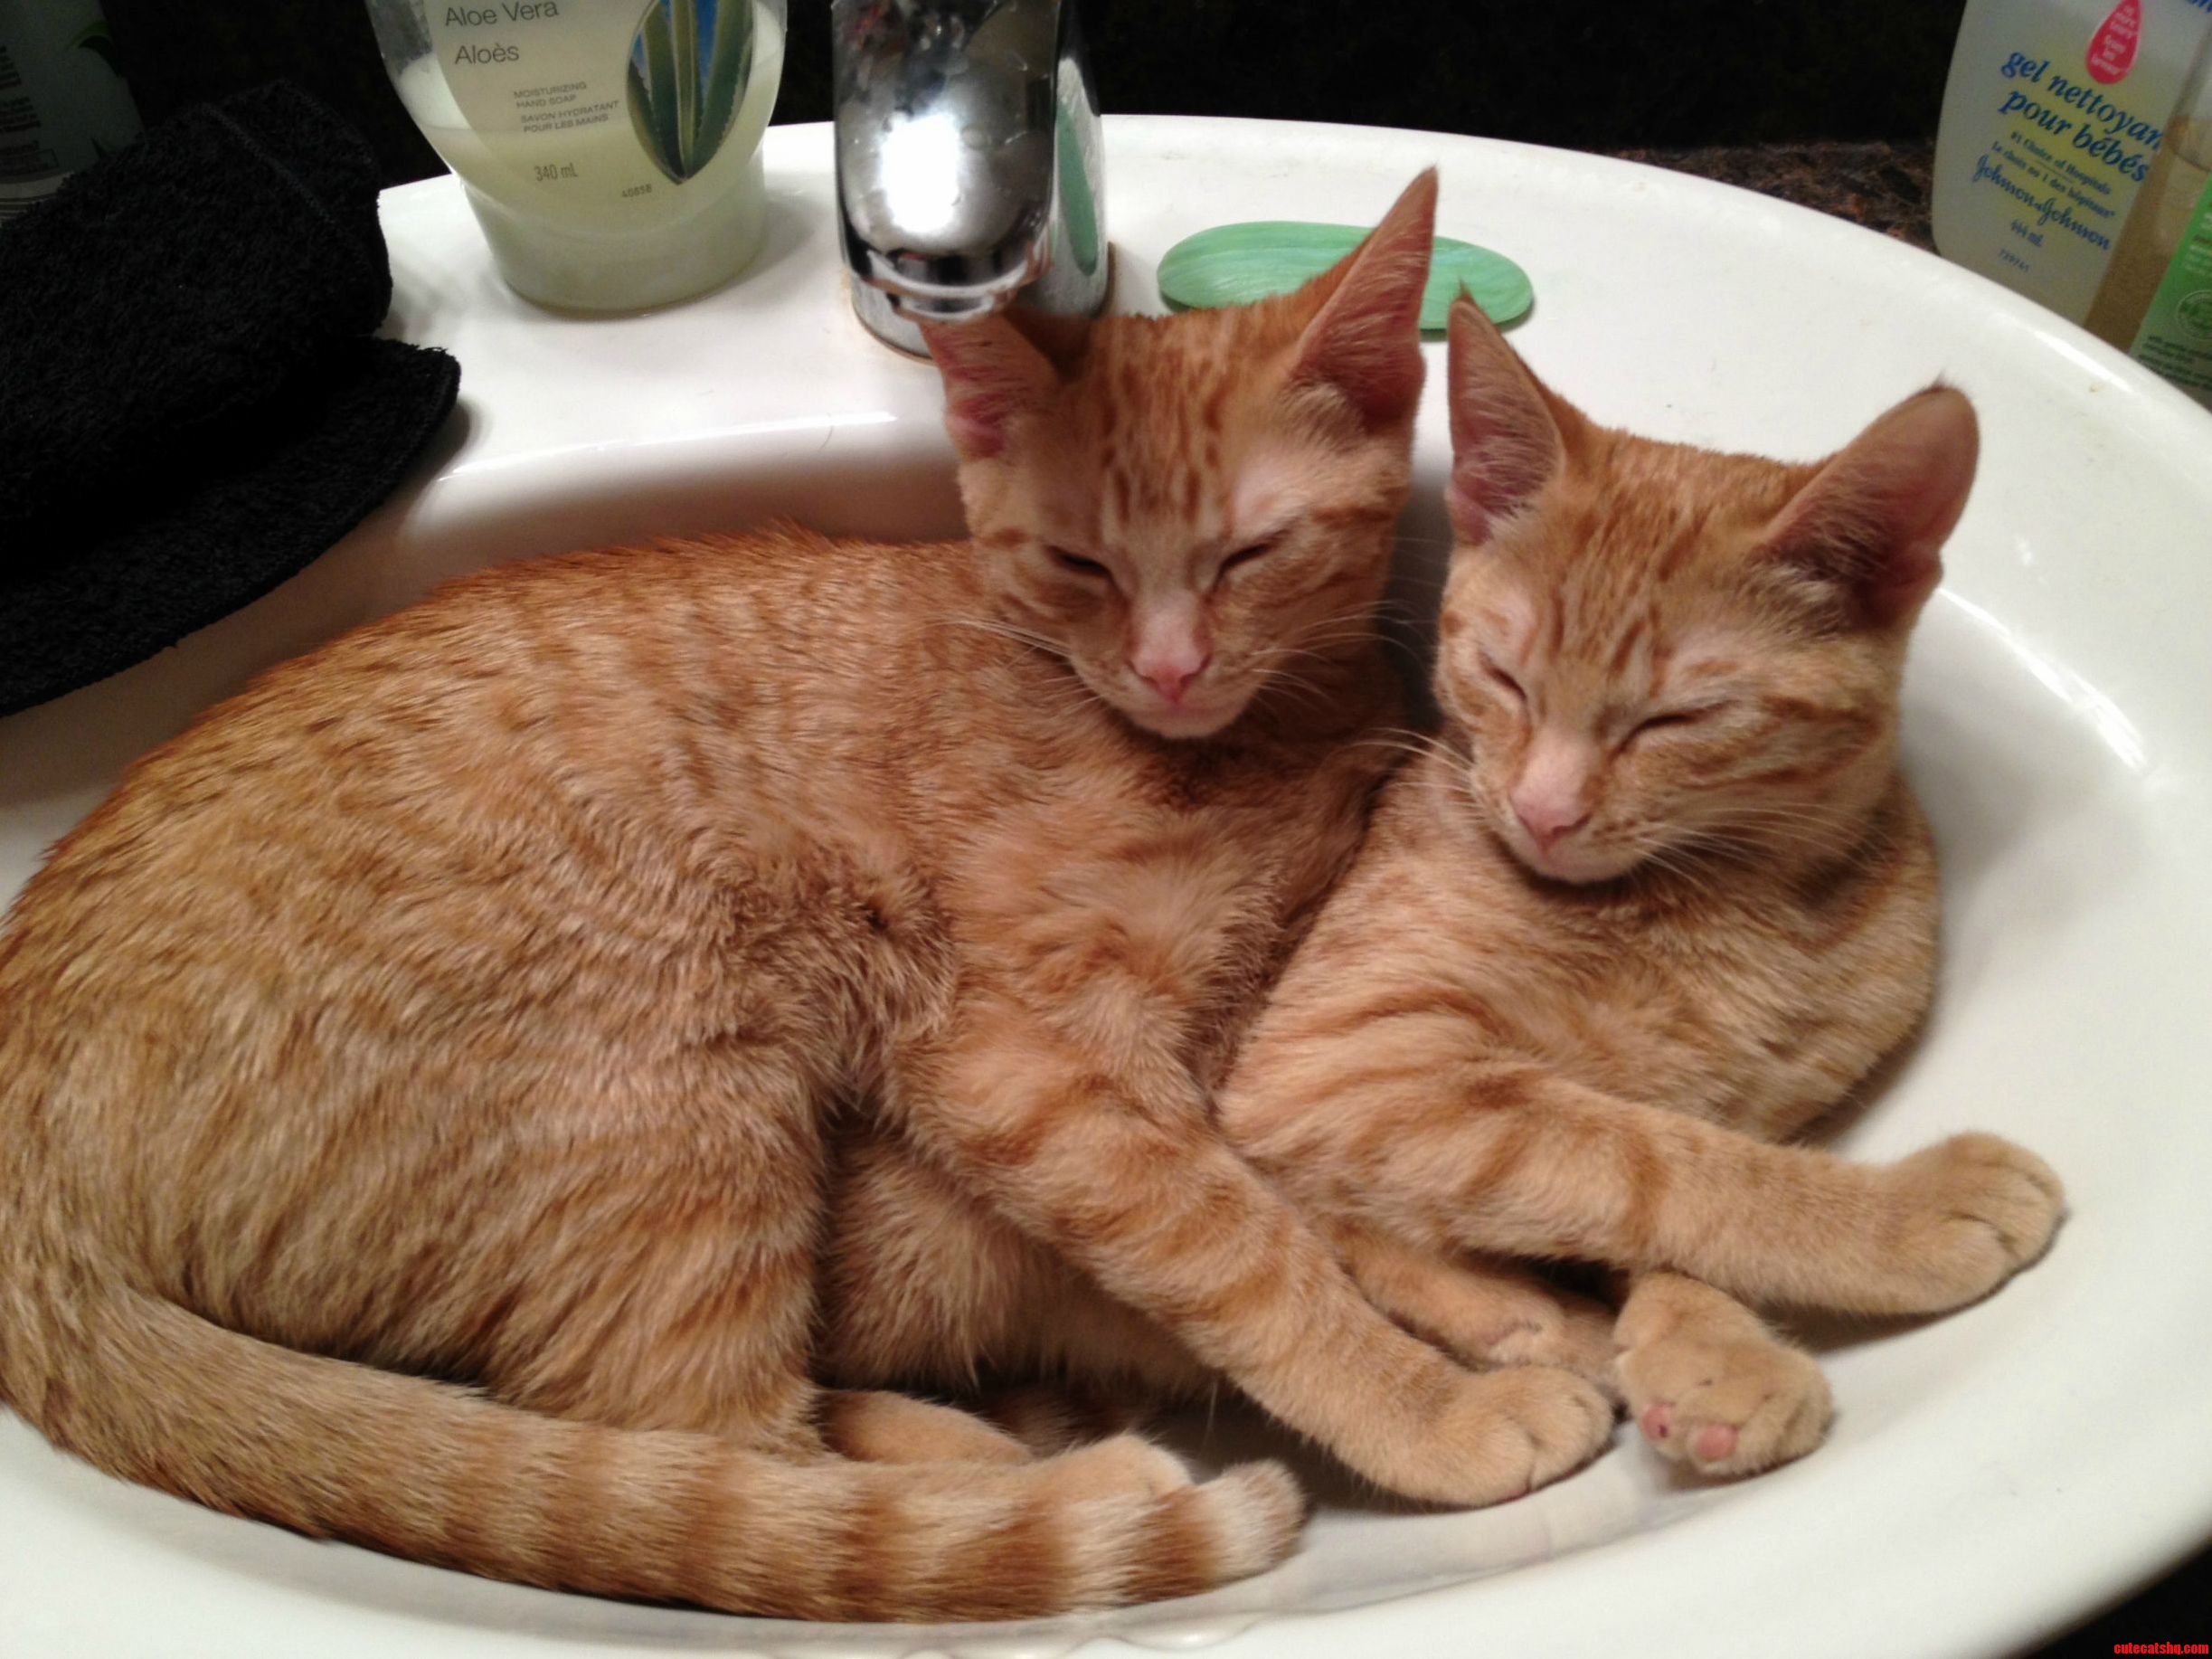 Sisters Sleeping In A Sink